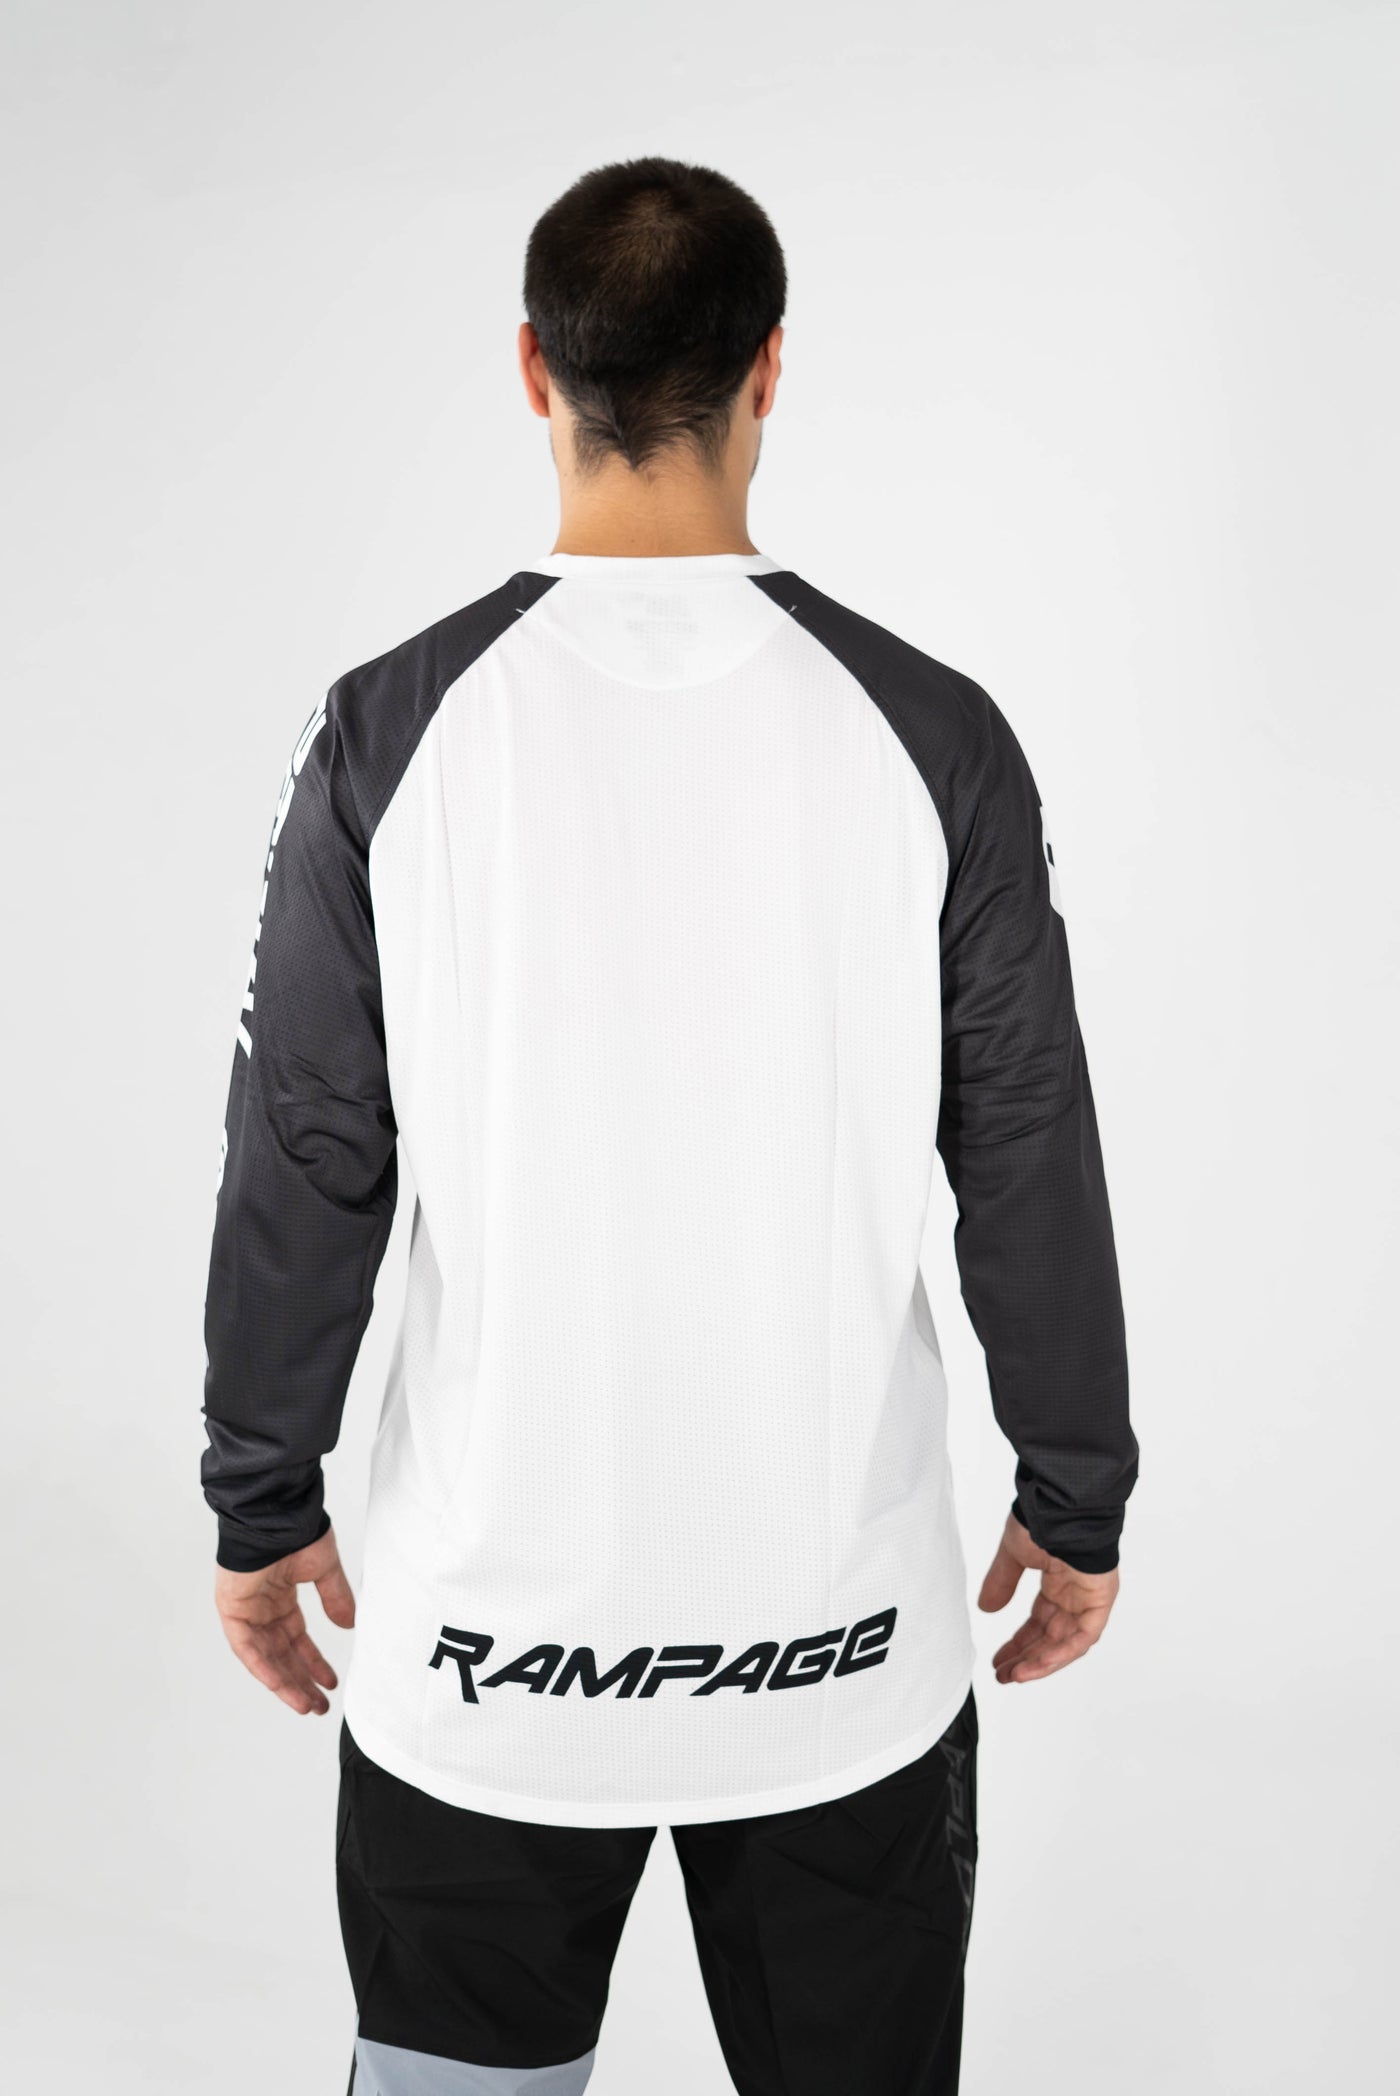 Rampage | Black & White